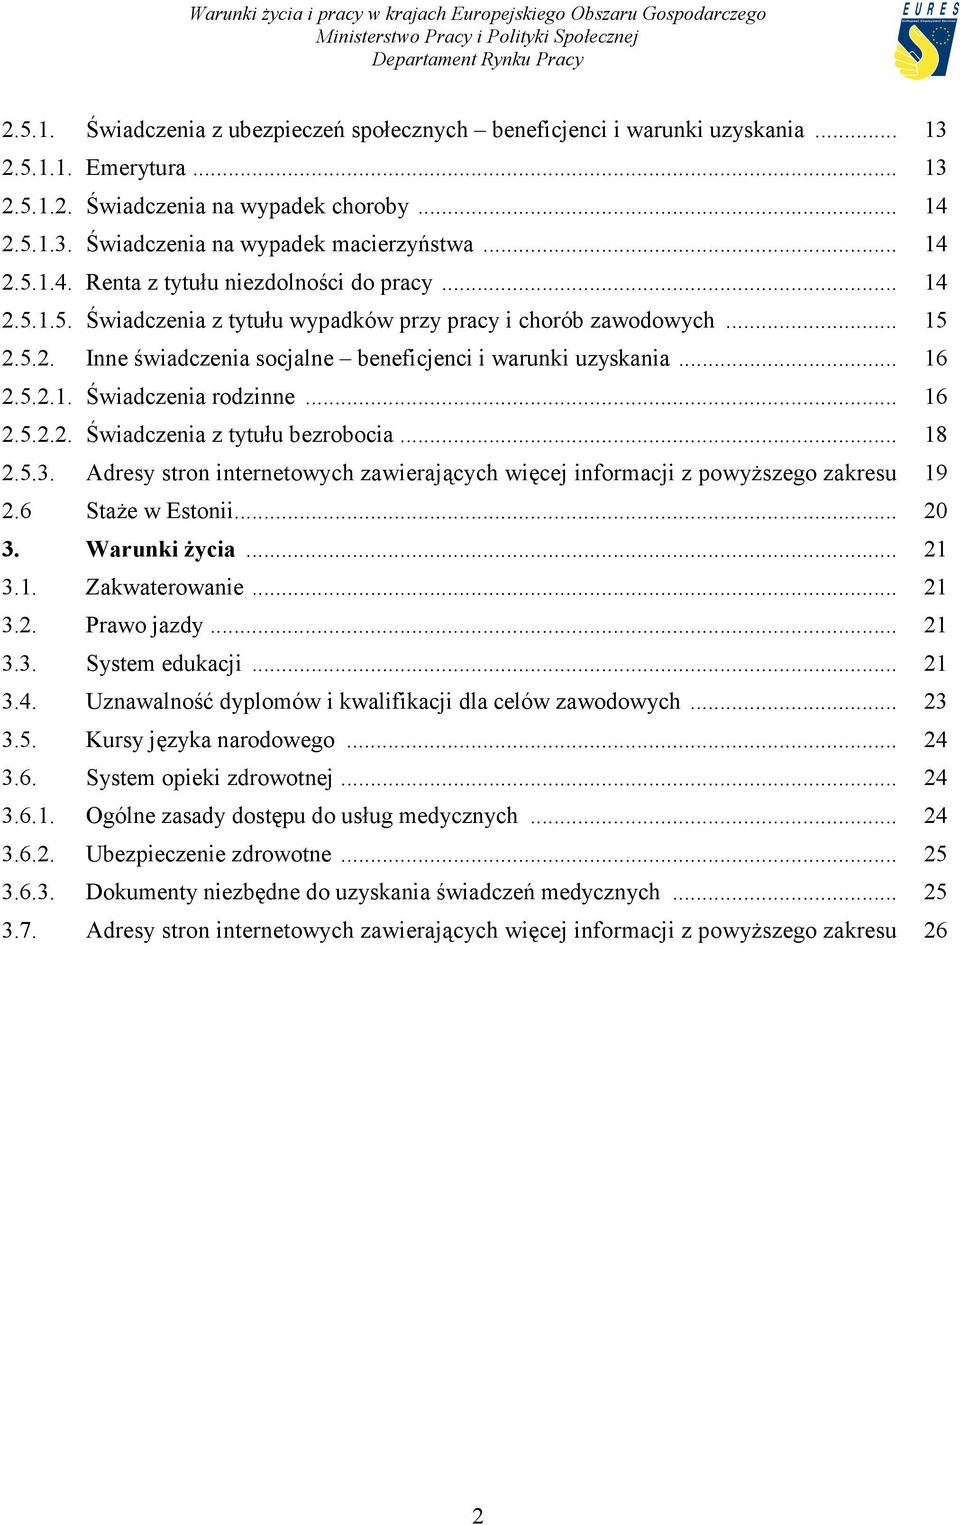 .. 16 2.5.2.1. Świadczenia rodzinne... 16 2.5.2.2. Świadczenia z tytułu bezrobocia... 18 2.5.3. Adresy stron internetowych zawierających więcej informacji z powyższego zakresu 19 2.6 Staże w Estonii.